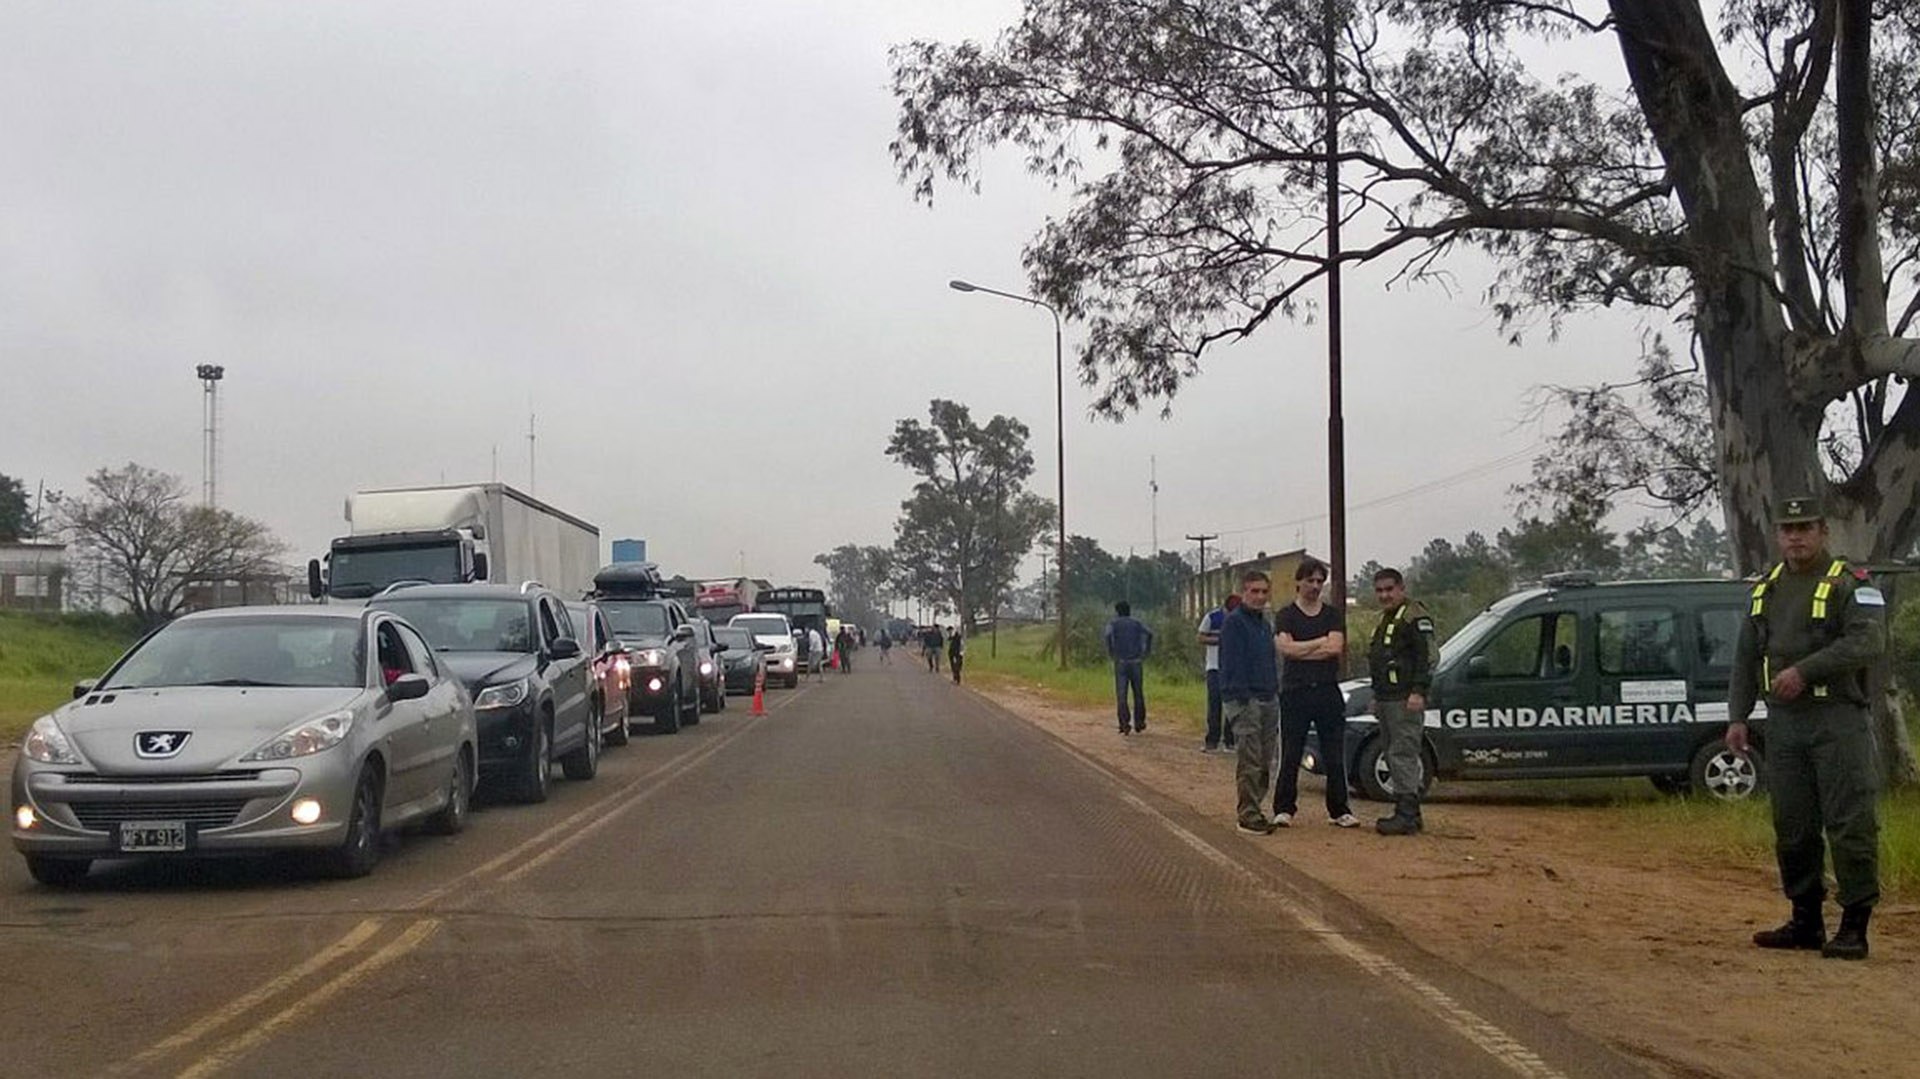 Uruguaiana, en la frontera entre Argentina y Brasil. Ya no se permitirá el ingreso al país por vías terrestres 